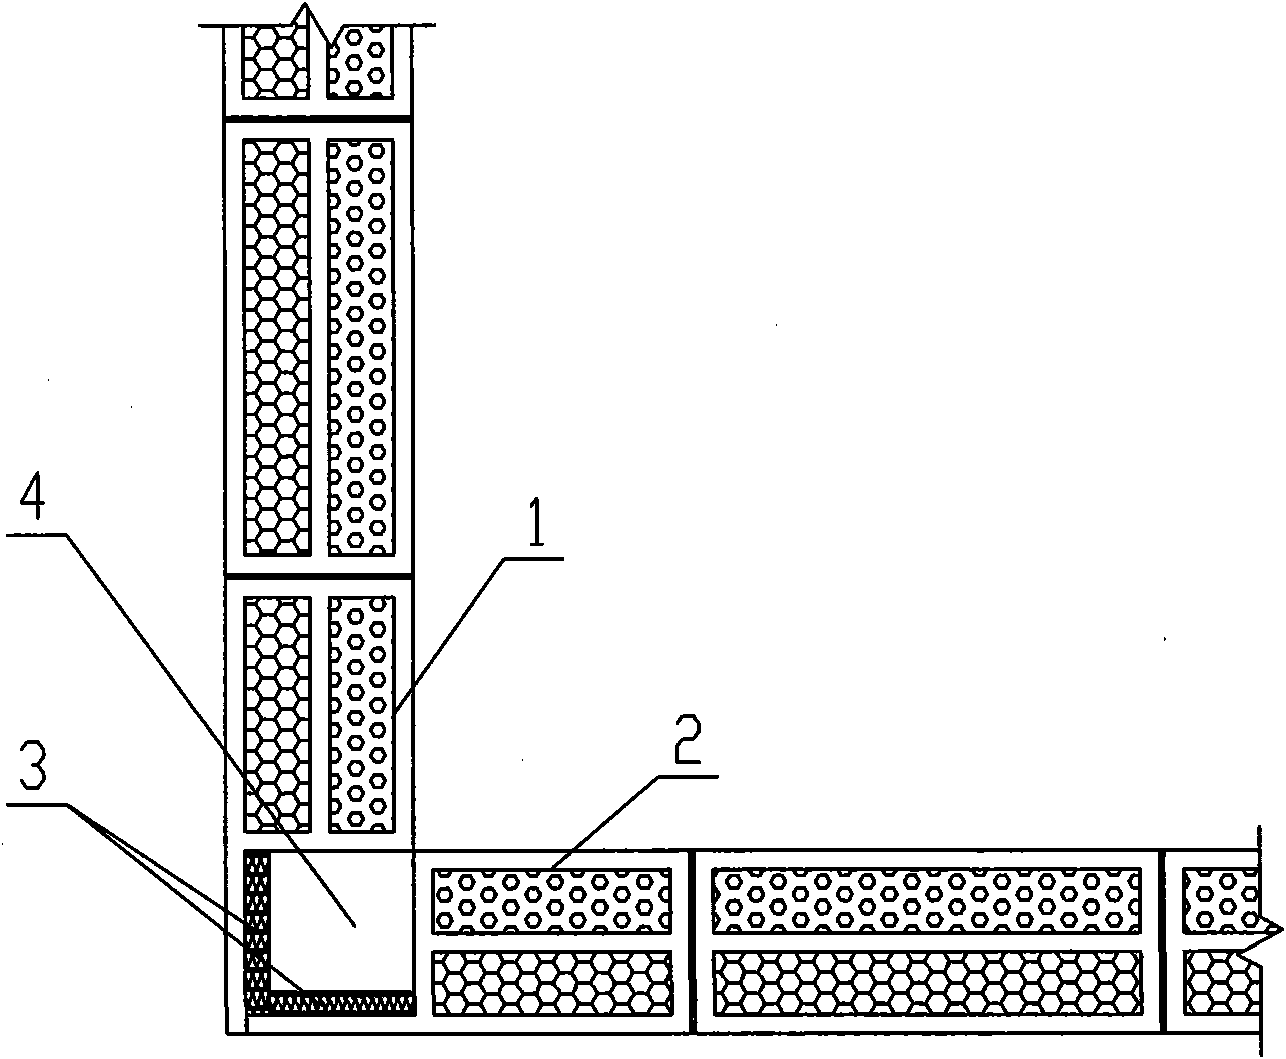 Novel corner constructional column with building block-concrete structure